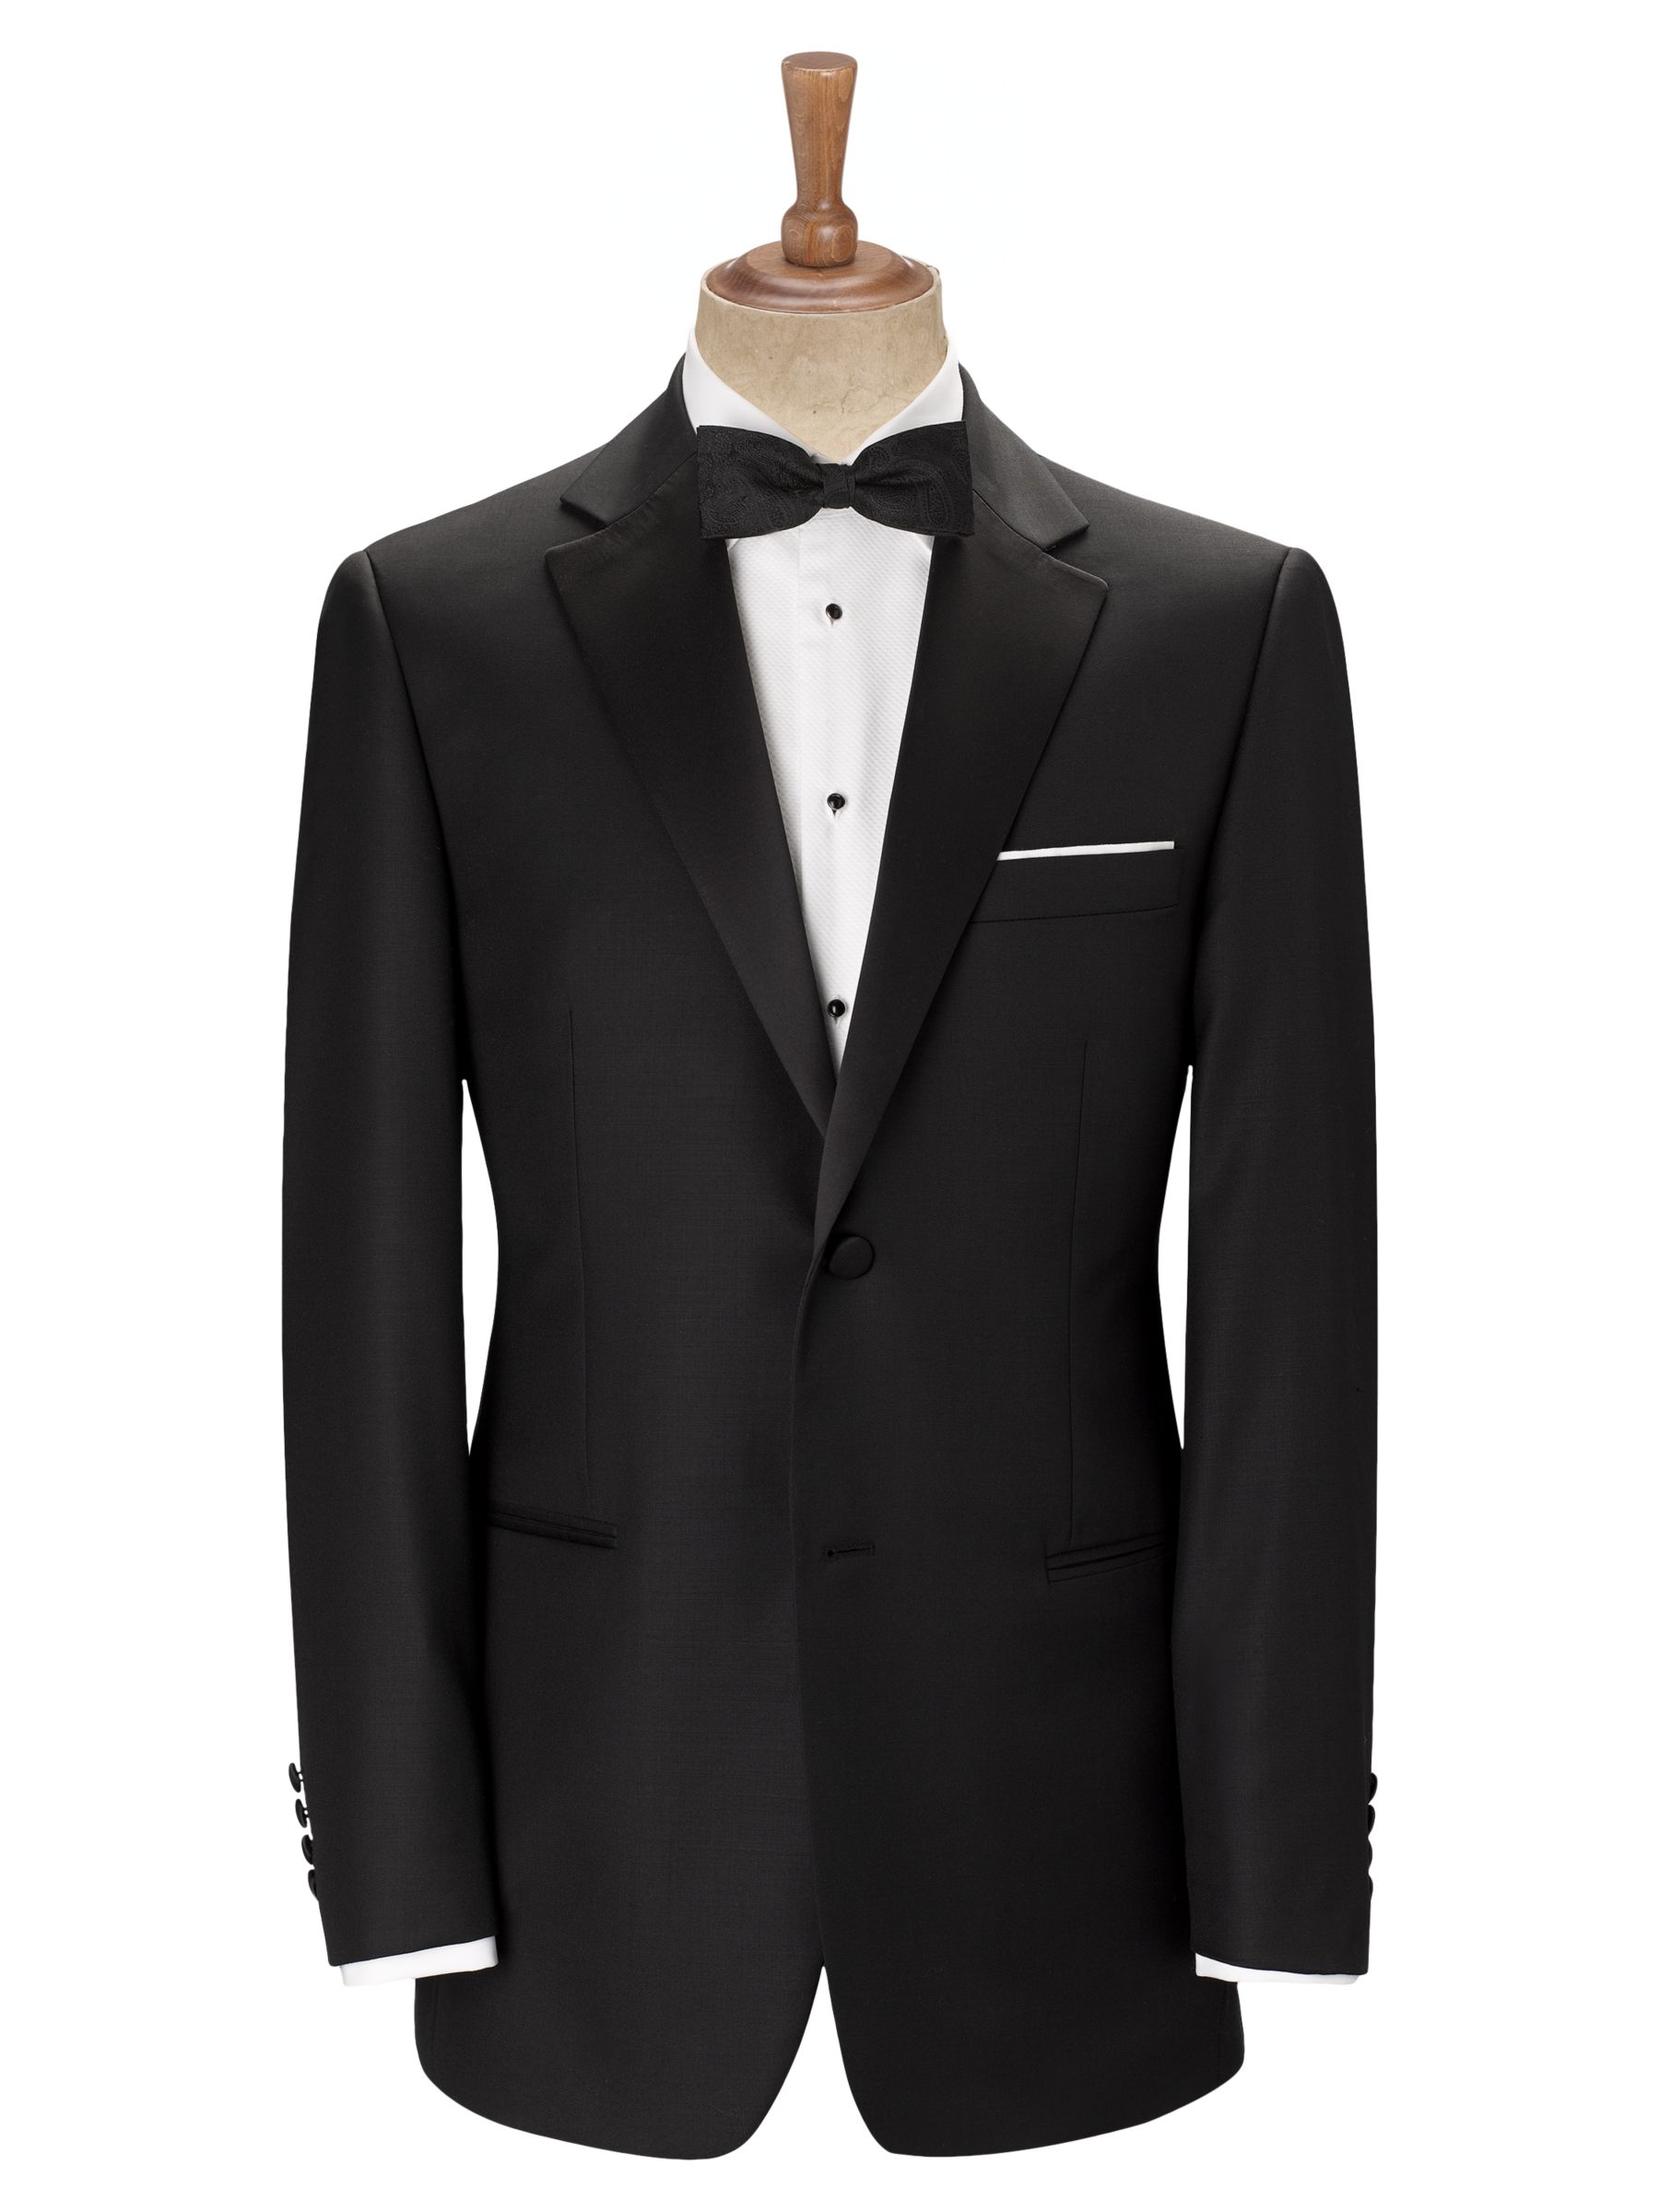 John Lewis & Partners Dallas Dress Suit Jacket, Black